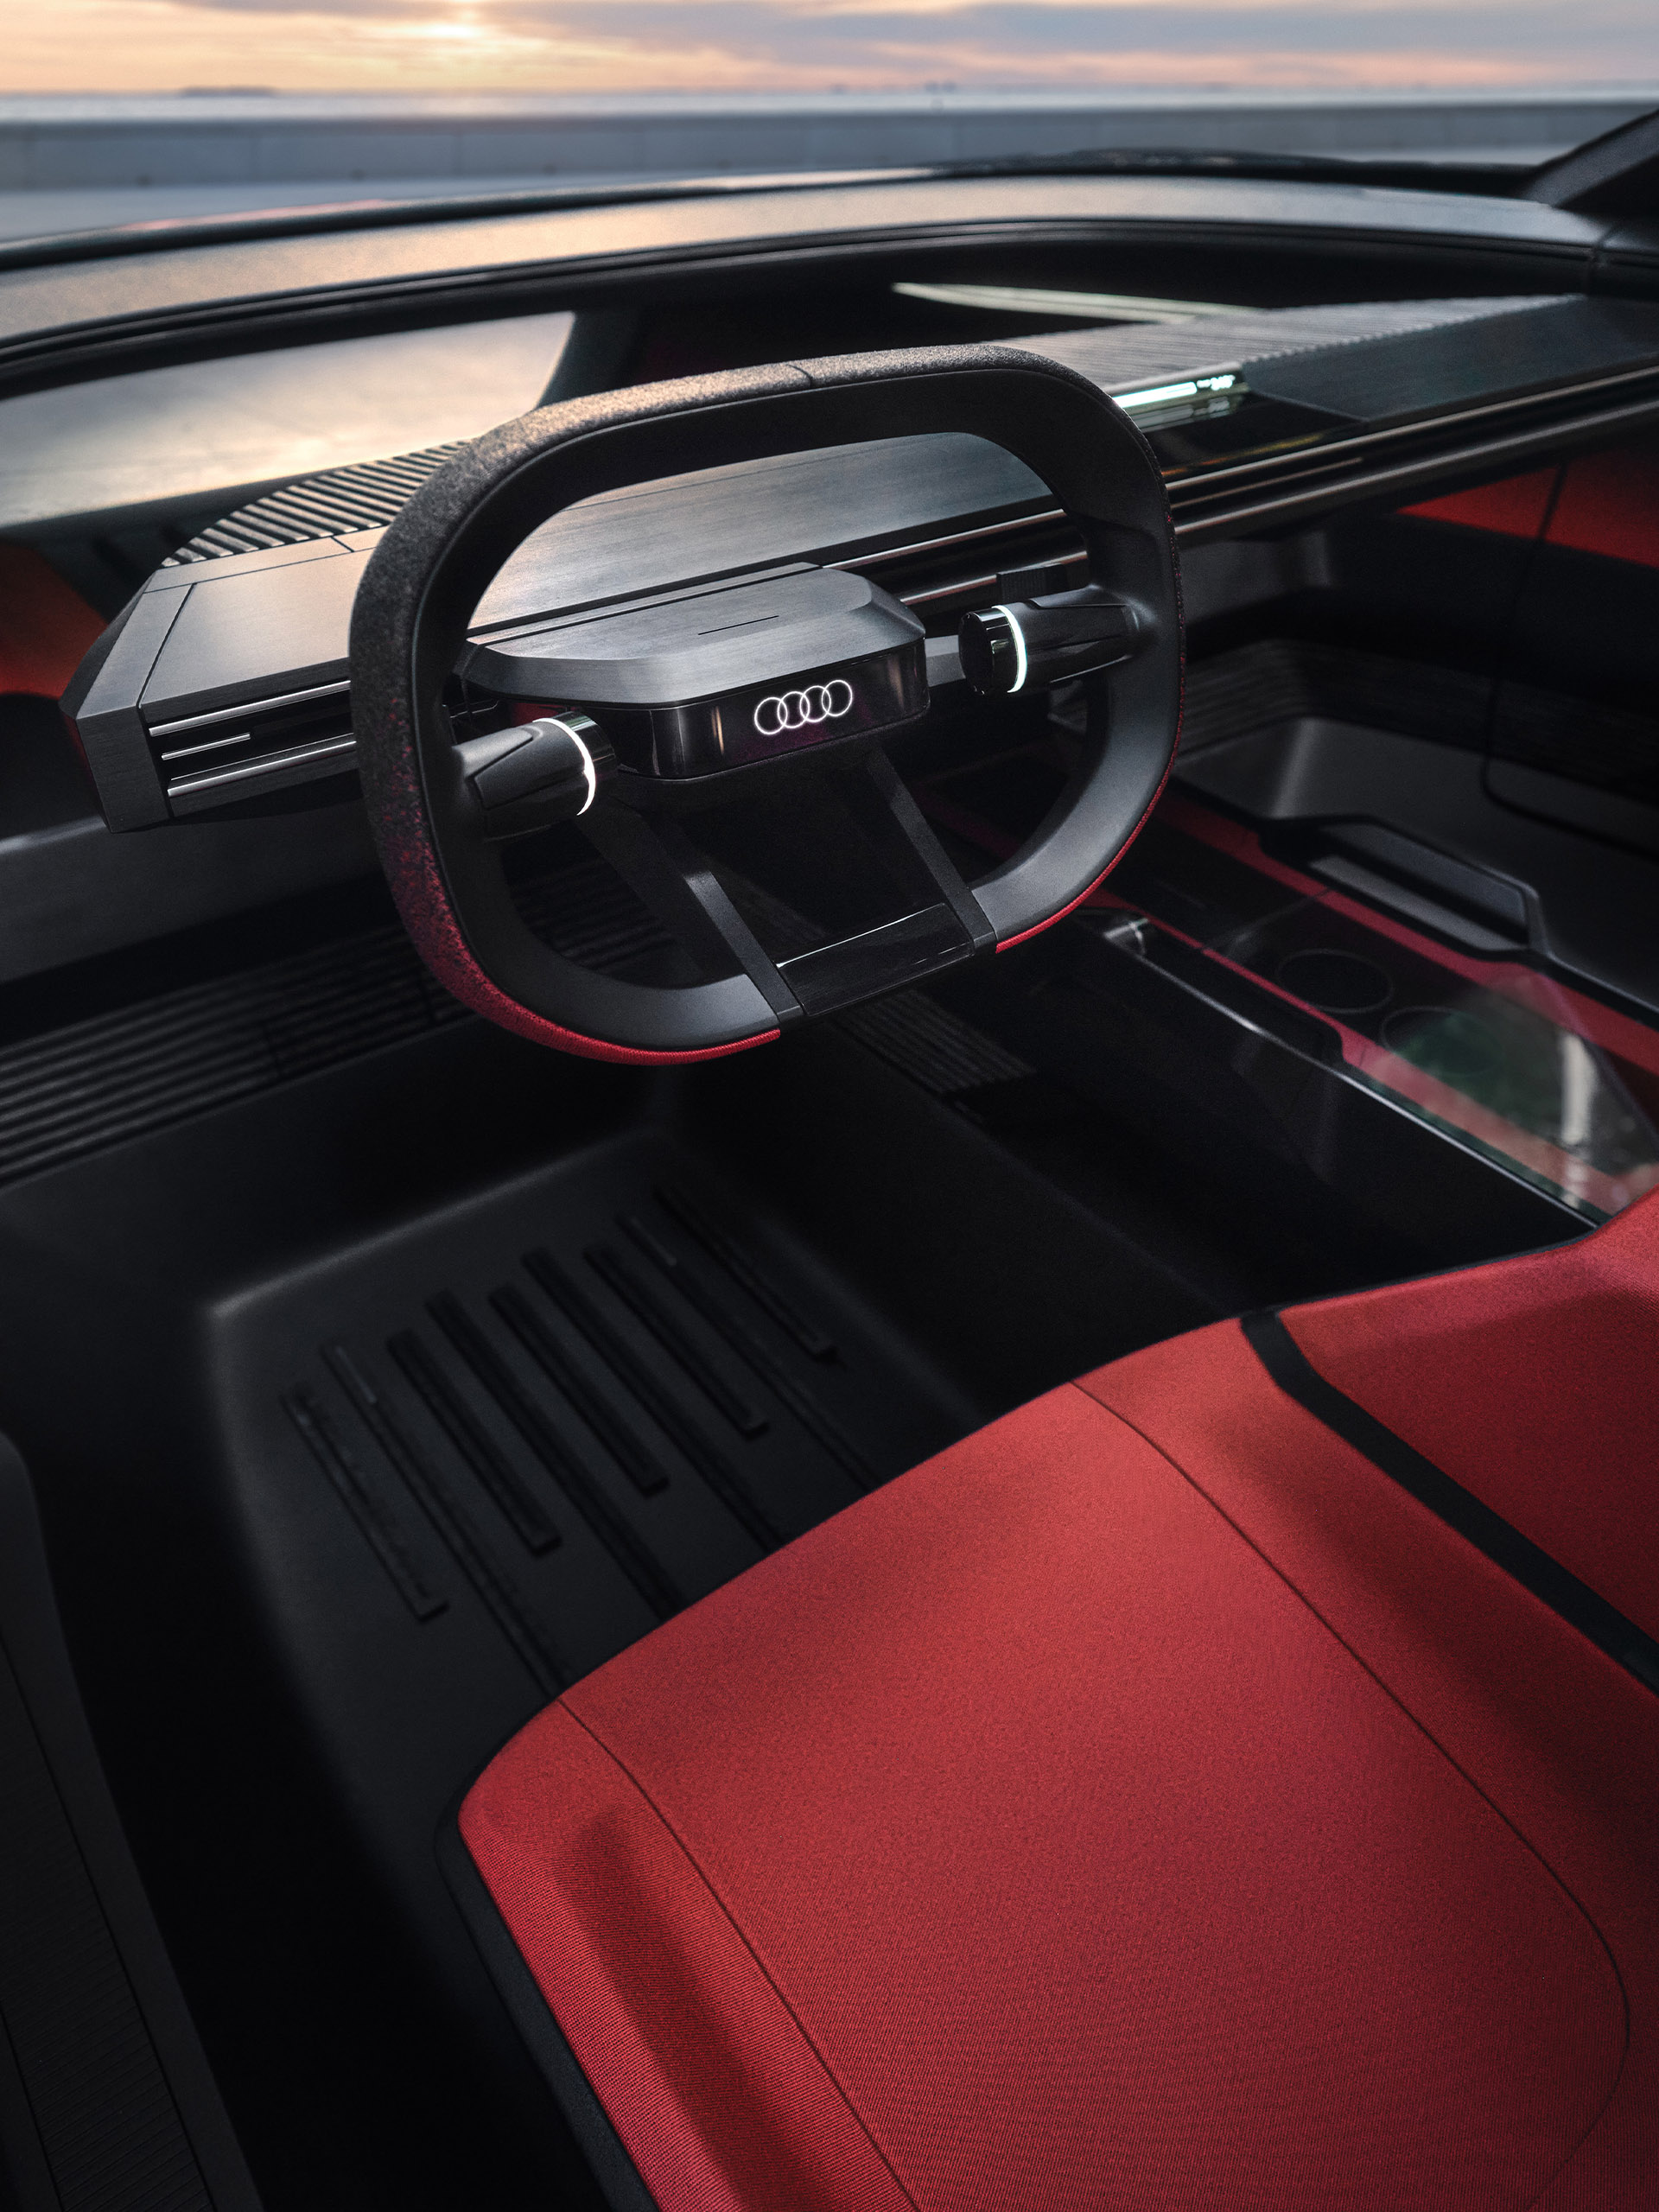 Audi activesphere concept : アクティブなライフスタイルのパートナー